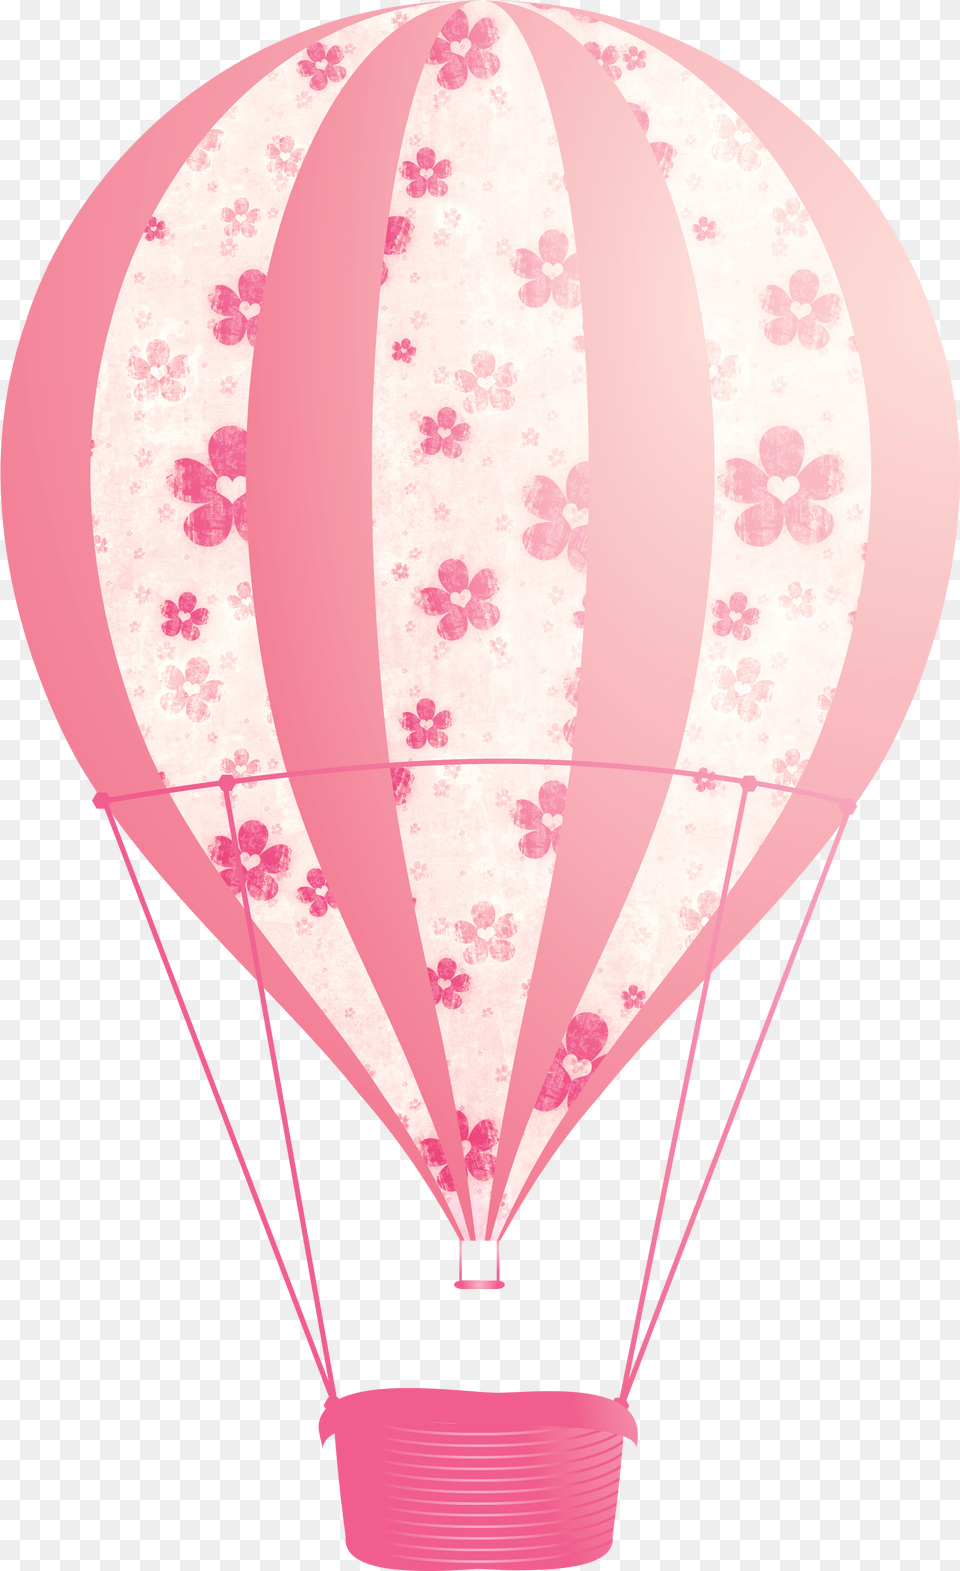 Pink Hot Air Balloon Clipart Hot Air Balloon Pink, Aircraft, Hot Air Balloon, Transportation, Vehicle Png